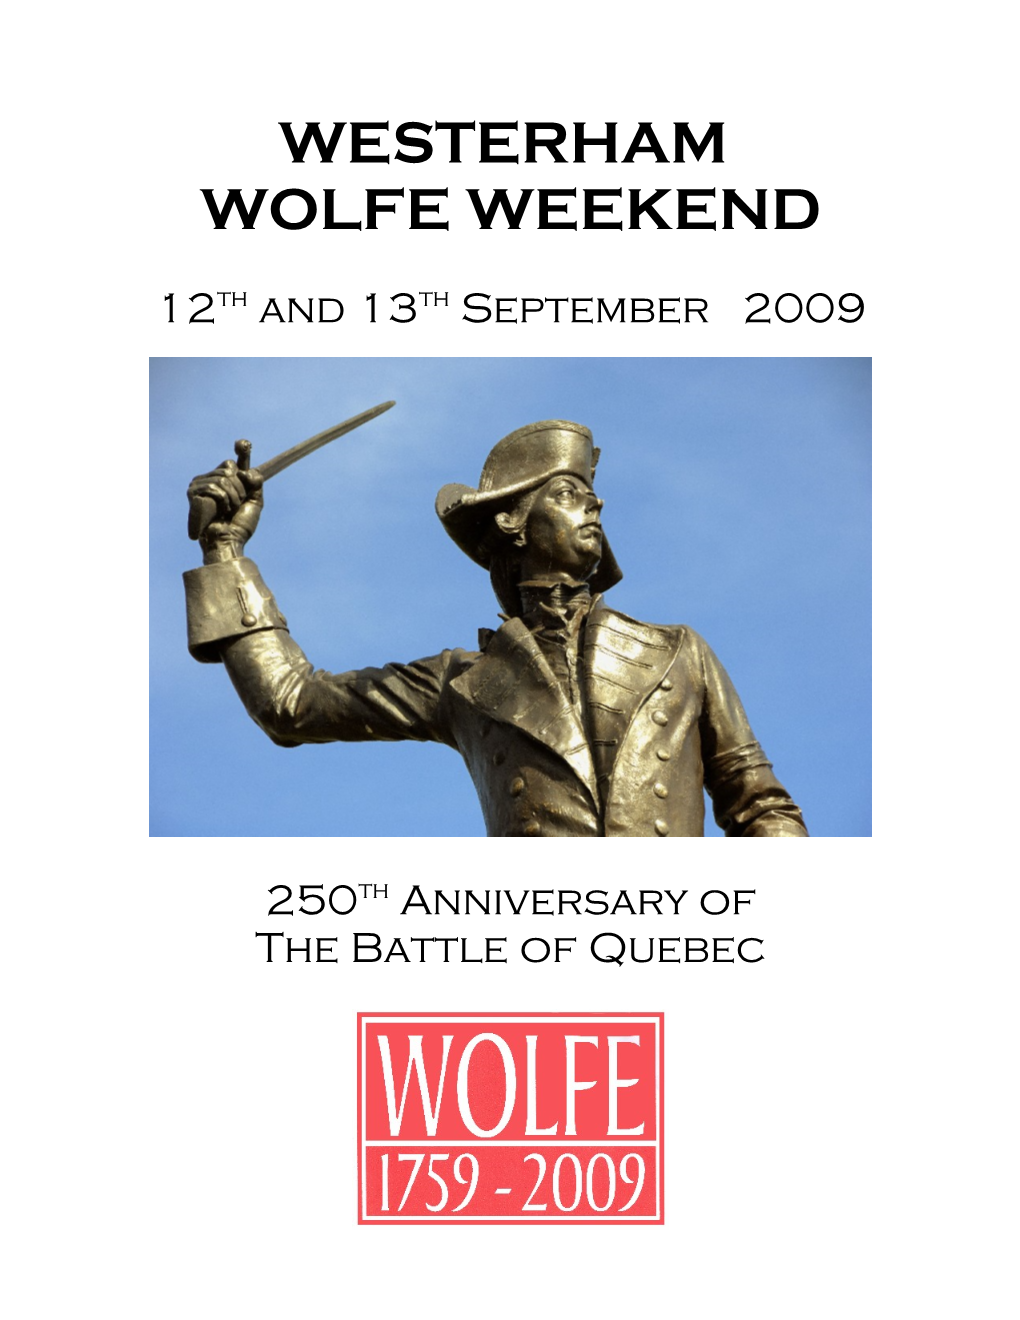 Westerham Wolfe Weekend